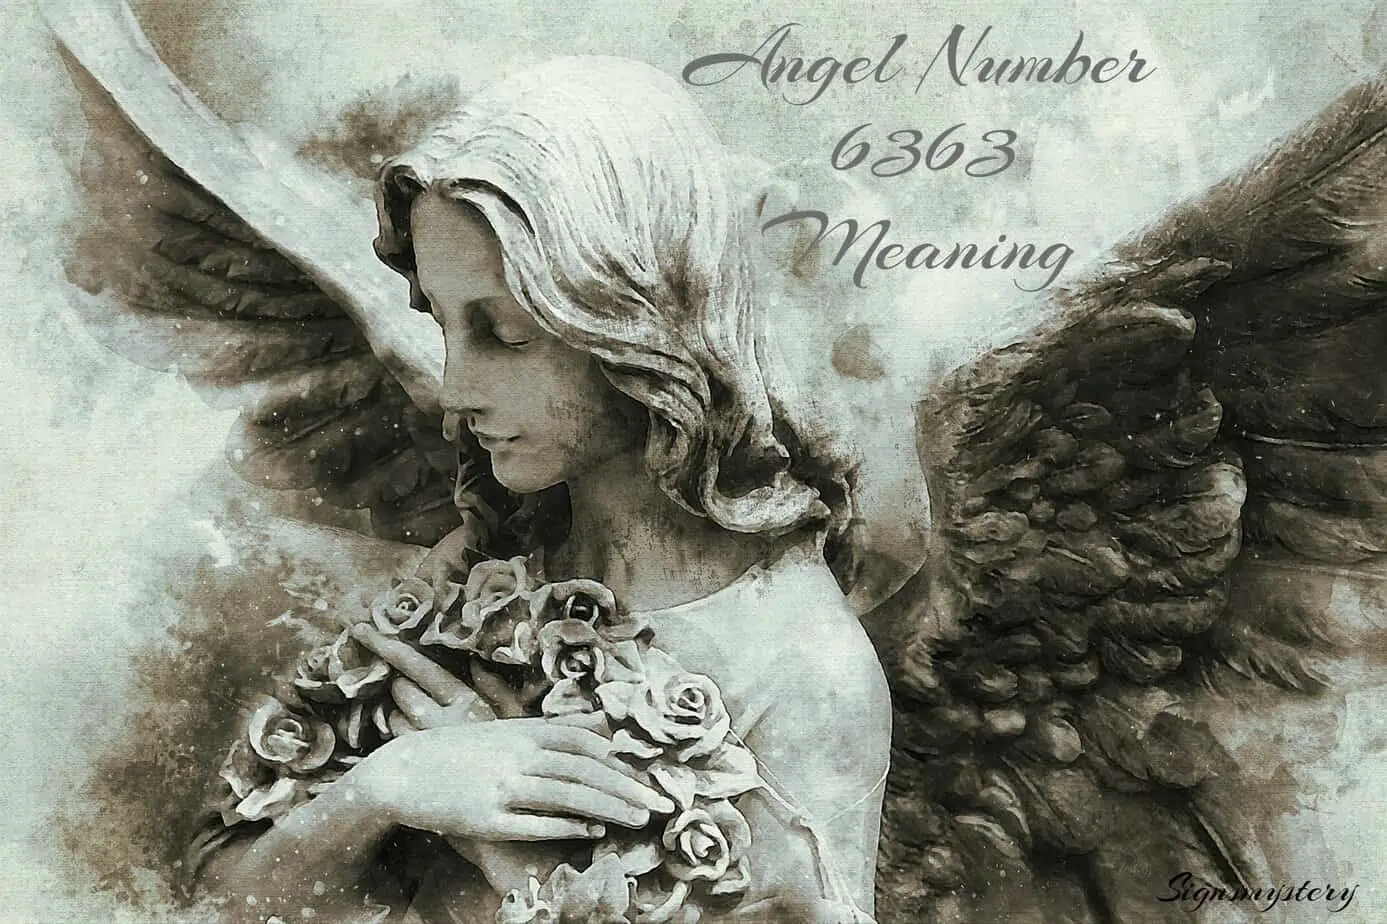 6363 Angel number